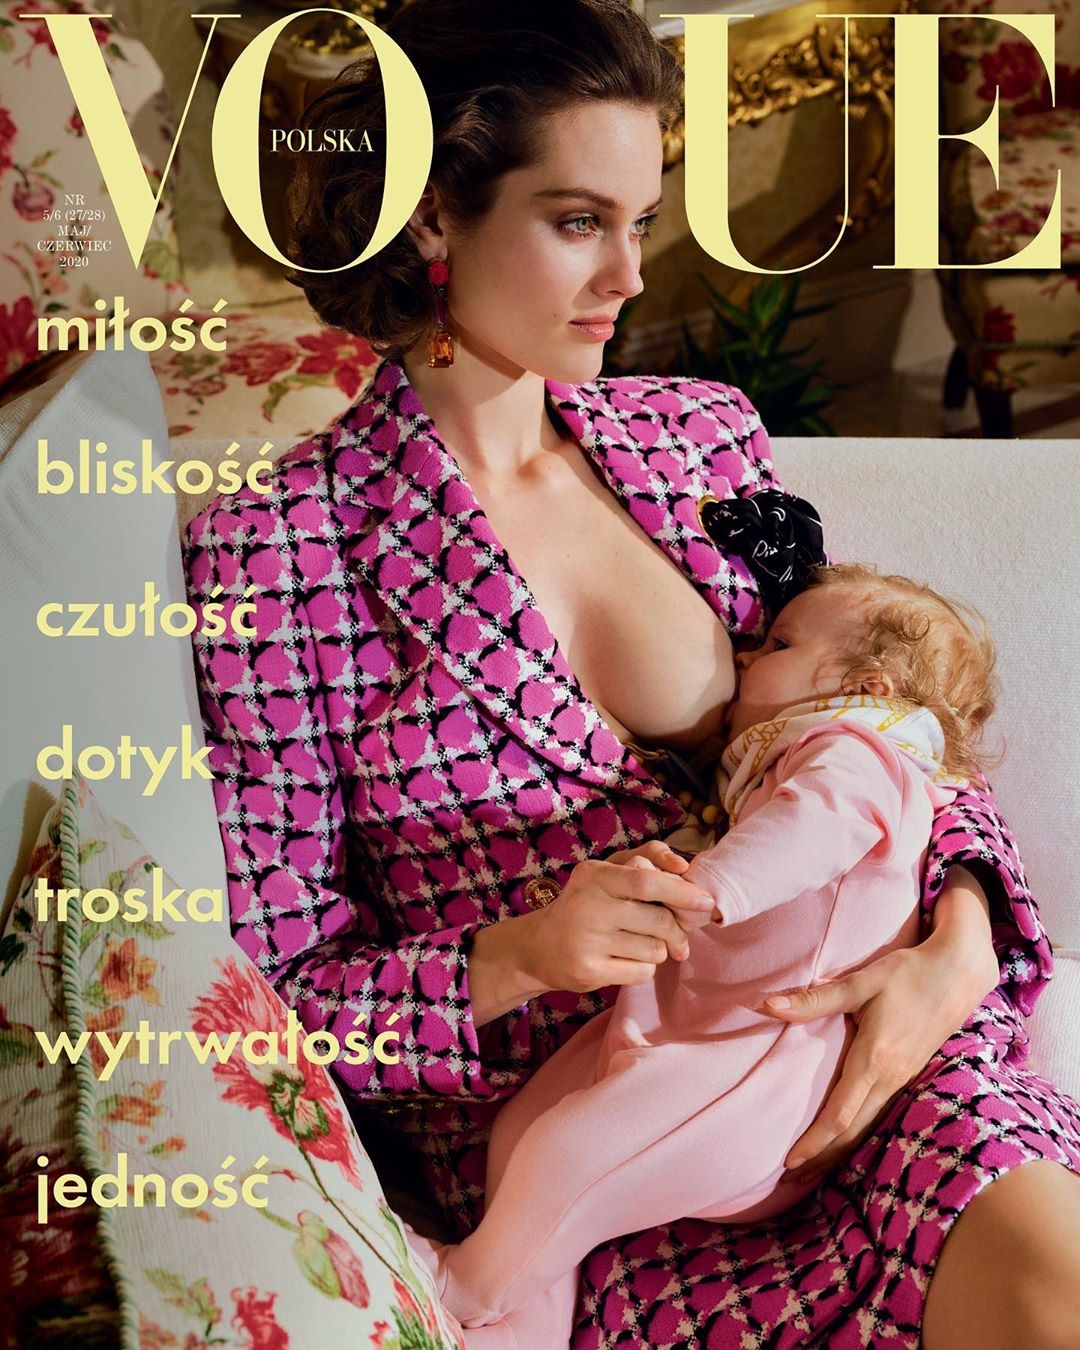 Польский Vogue поместил на обложку кормящую мать (ФОТО) - фото №1